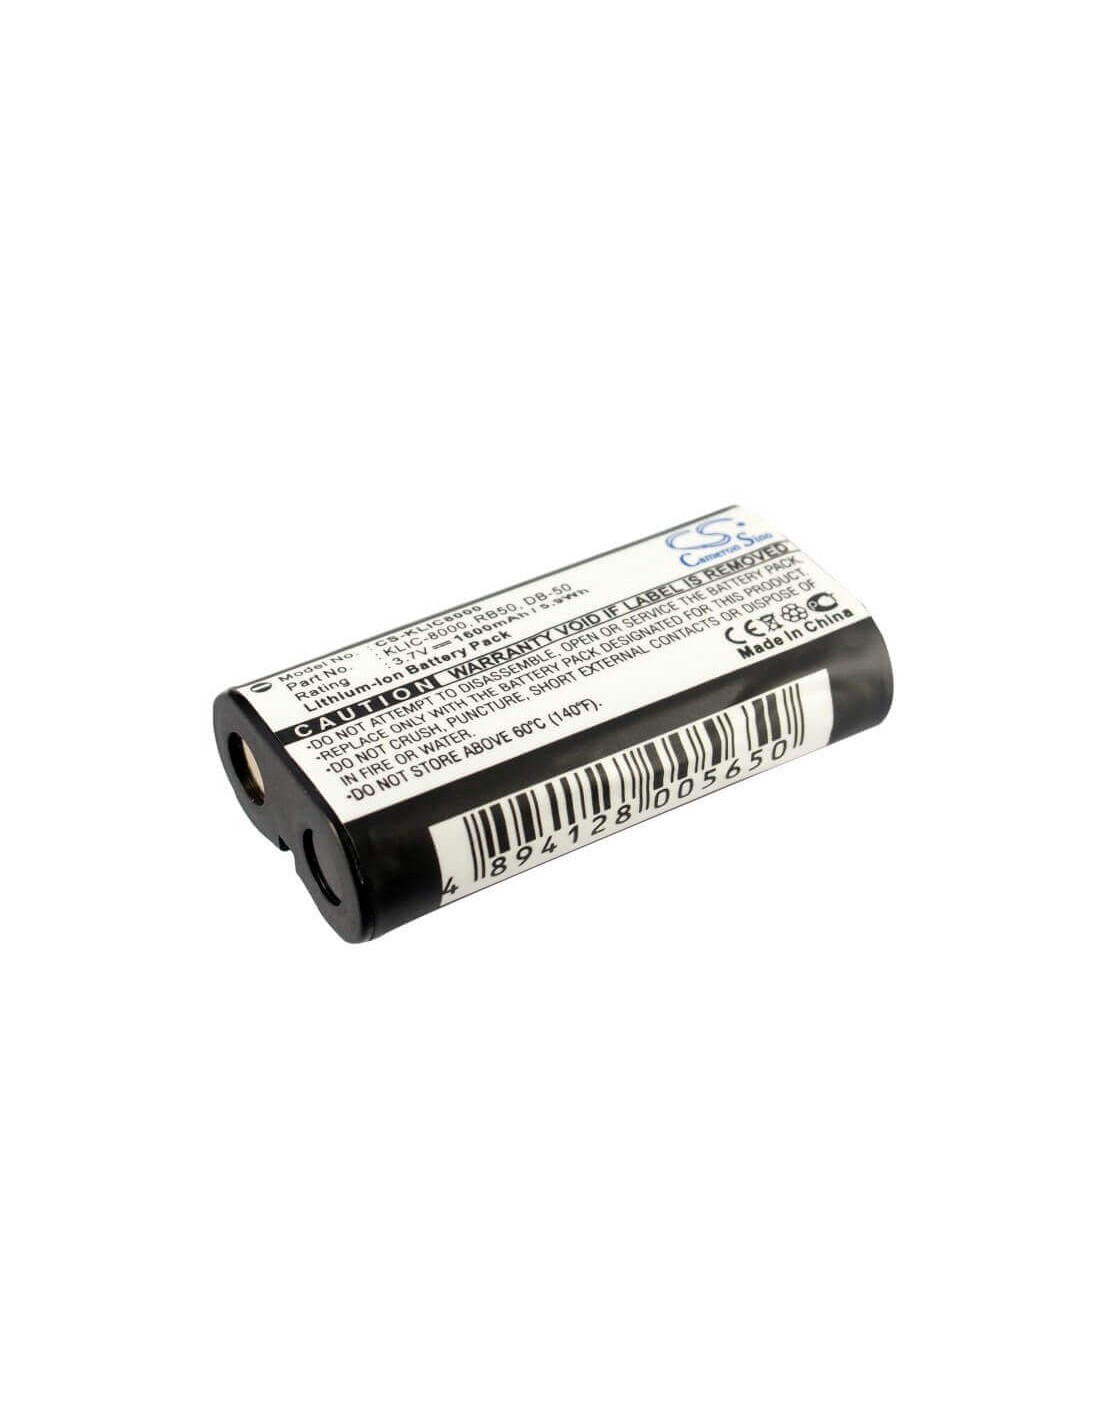 Battery for Medion Md41066 3.7V, 1600mAh - 5.92Wh